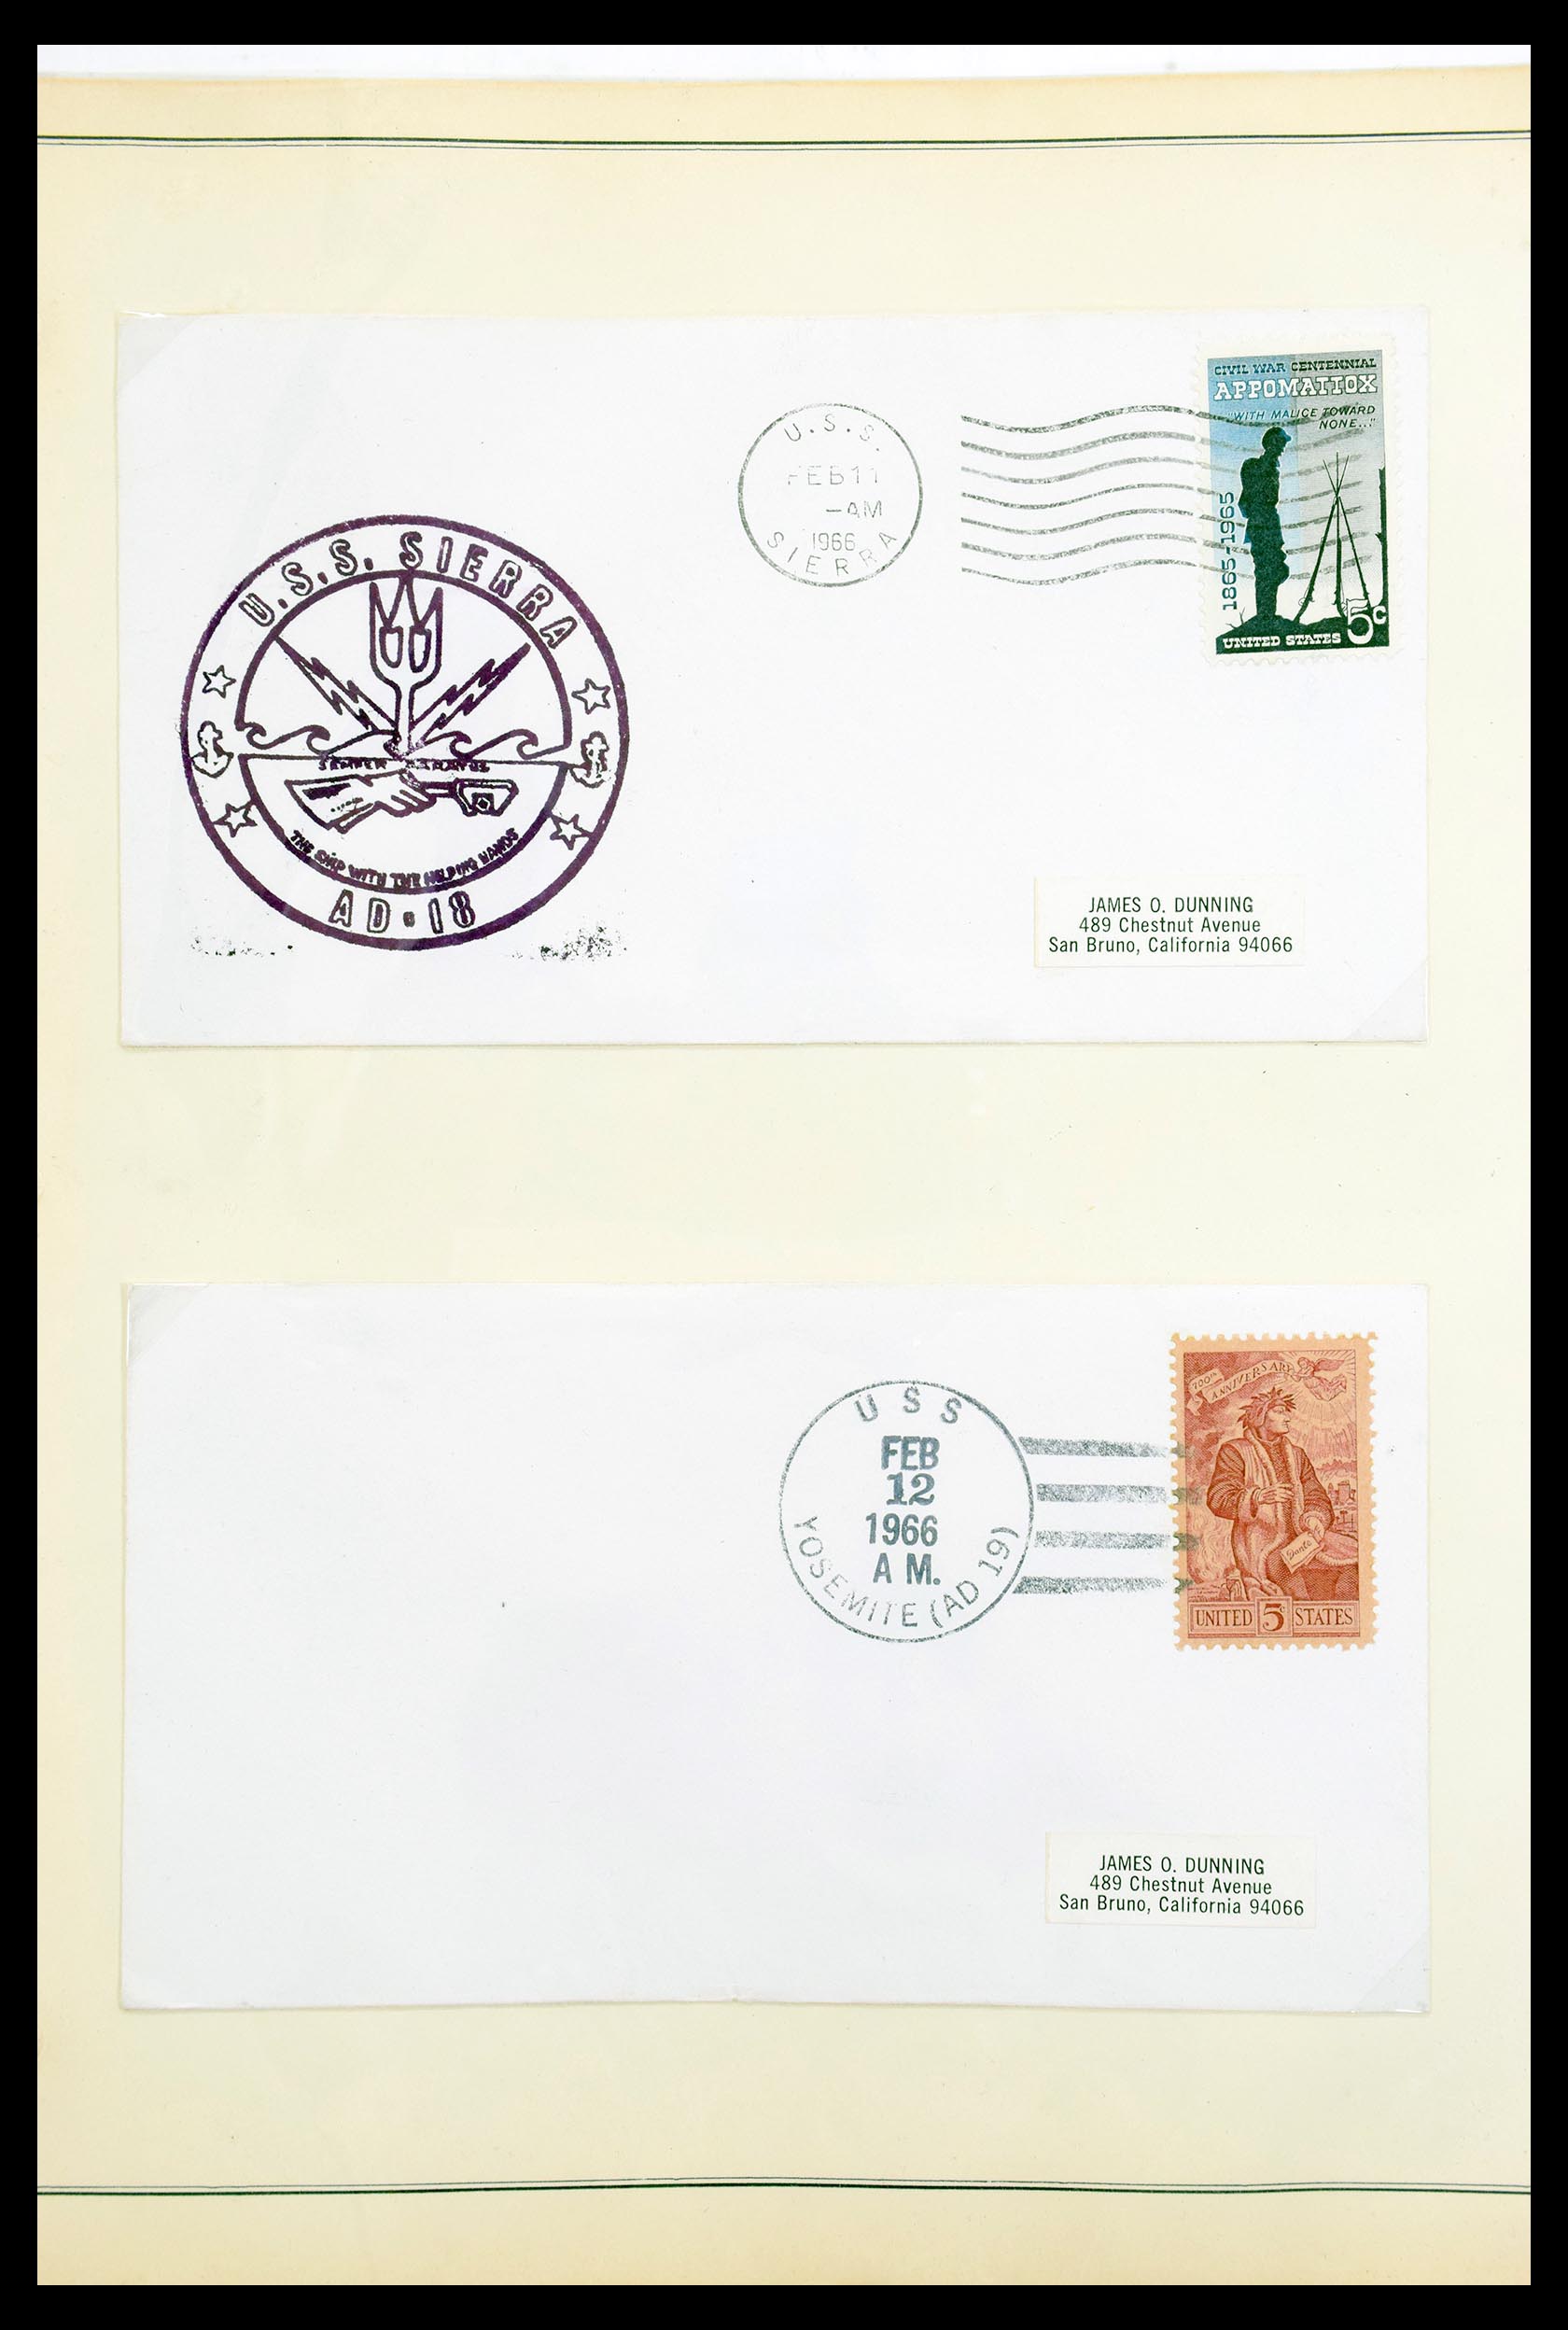 30341 005 - 30341 USA scheepspost brieven 1930-1970.